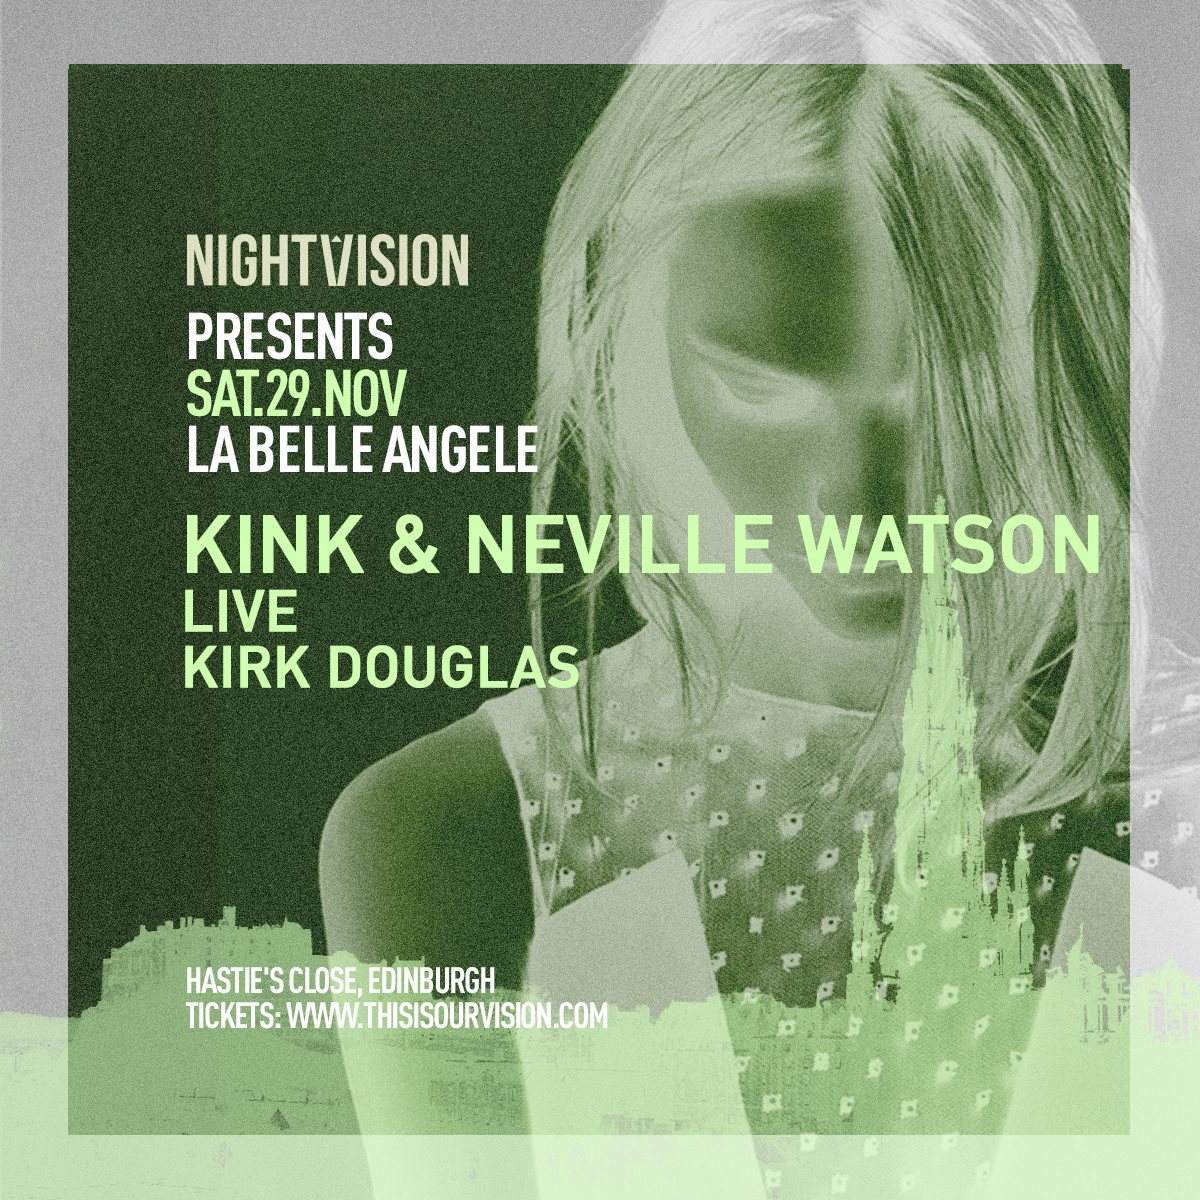 Nightvision presents - Kink & Neville Watson - フライヤー表